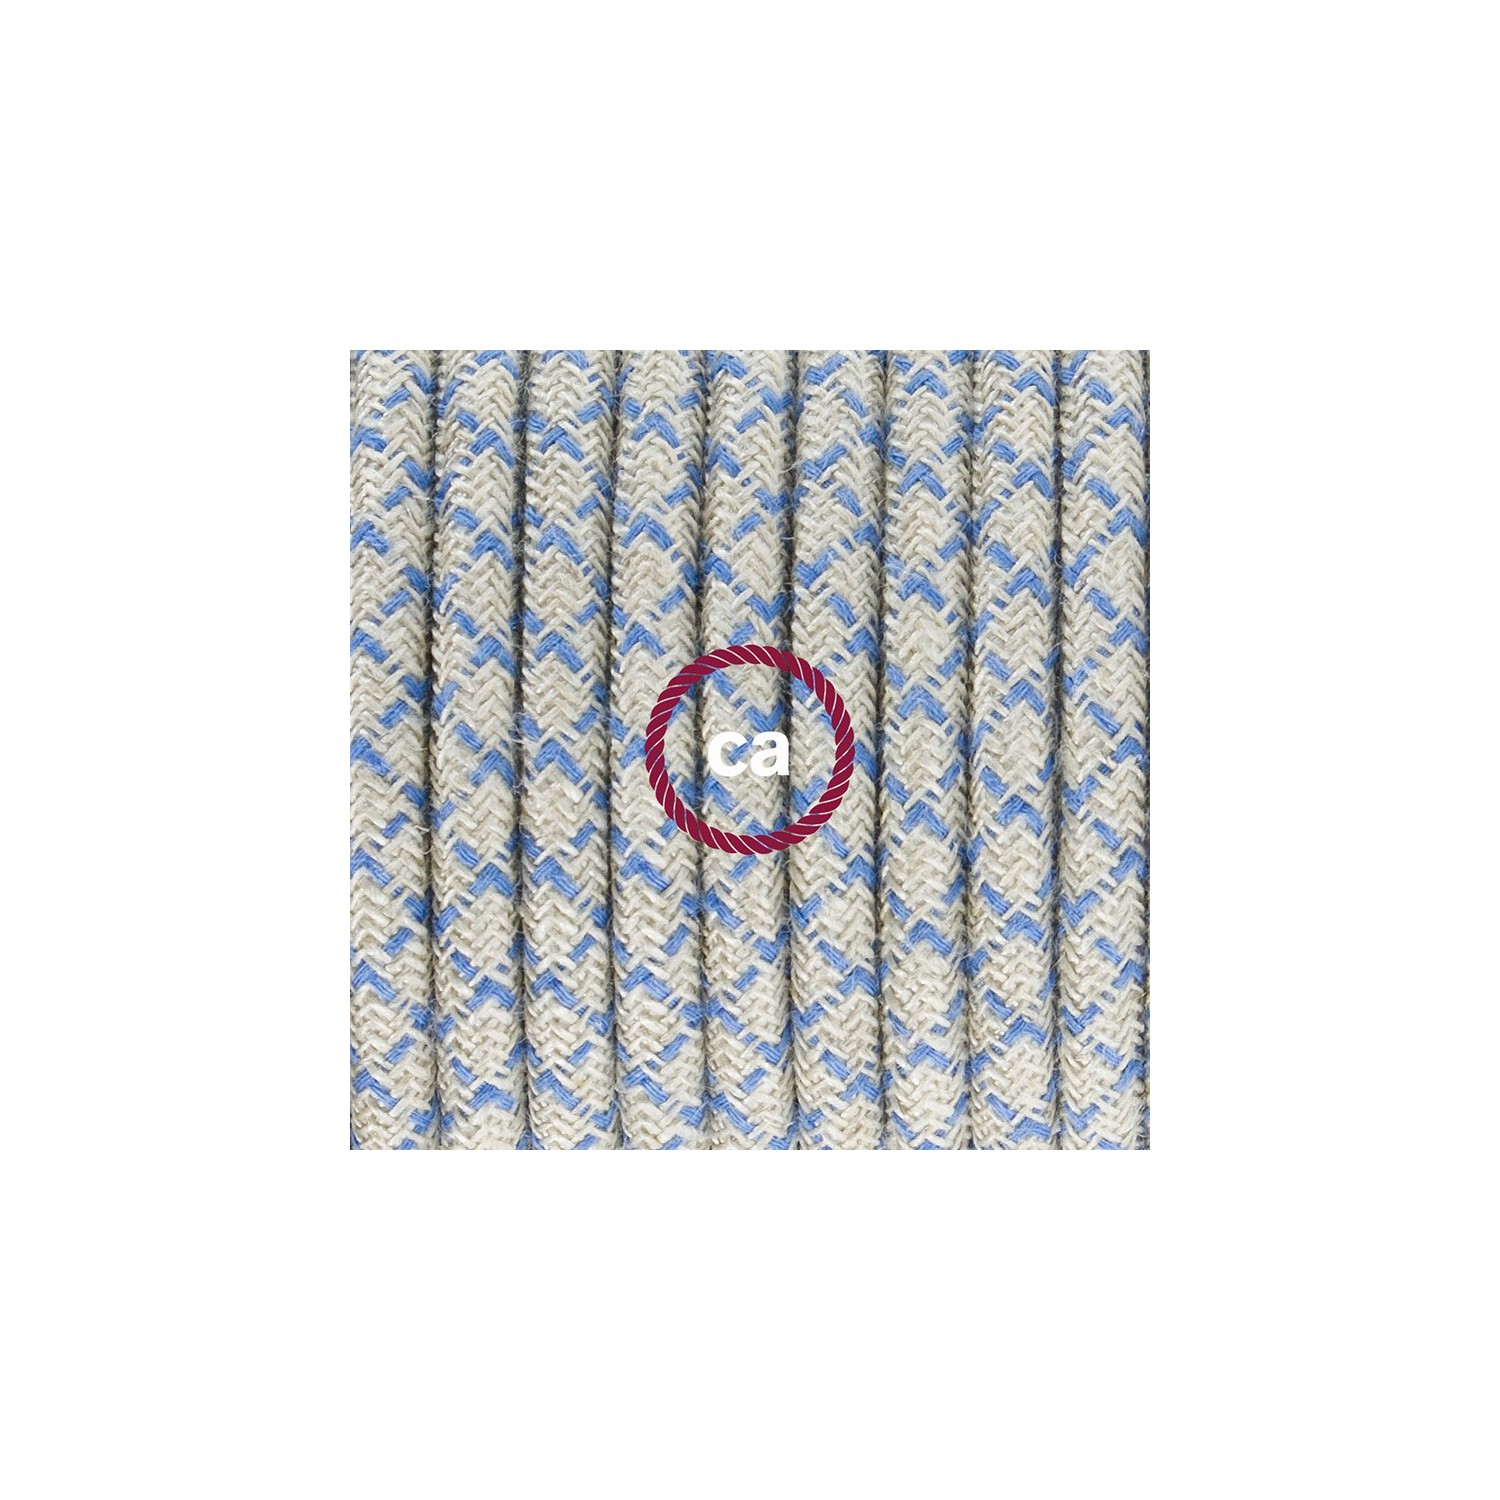 Ronde flexibele textielkabel van katoen met schakelaar en stekker. RD65 - Steward blauw lozenge en linnen 1,80 m.